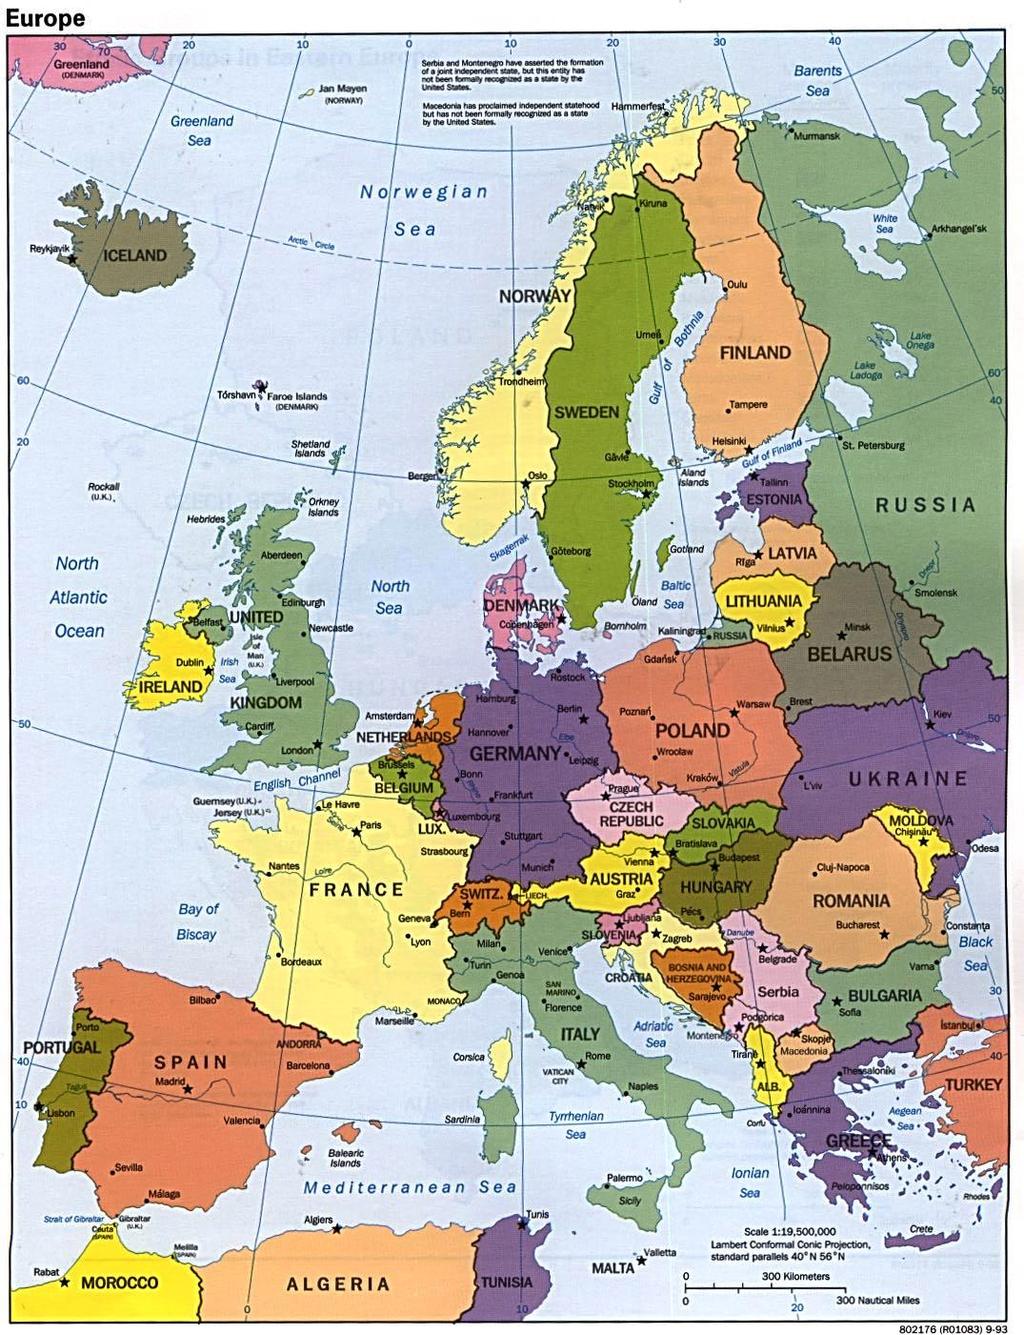 La cooperazione europea nel settore dell istruzione: una storia recente 1976 la fase sperimentale 1992 Maastricht la fase legale 1995 I Programmi d